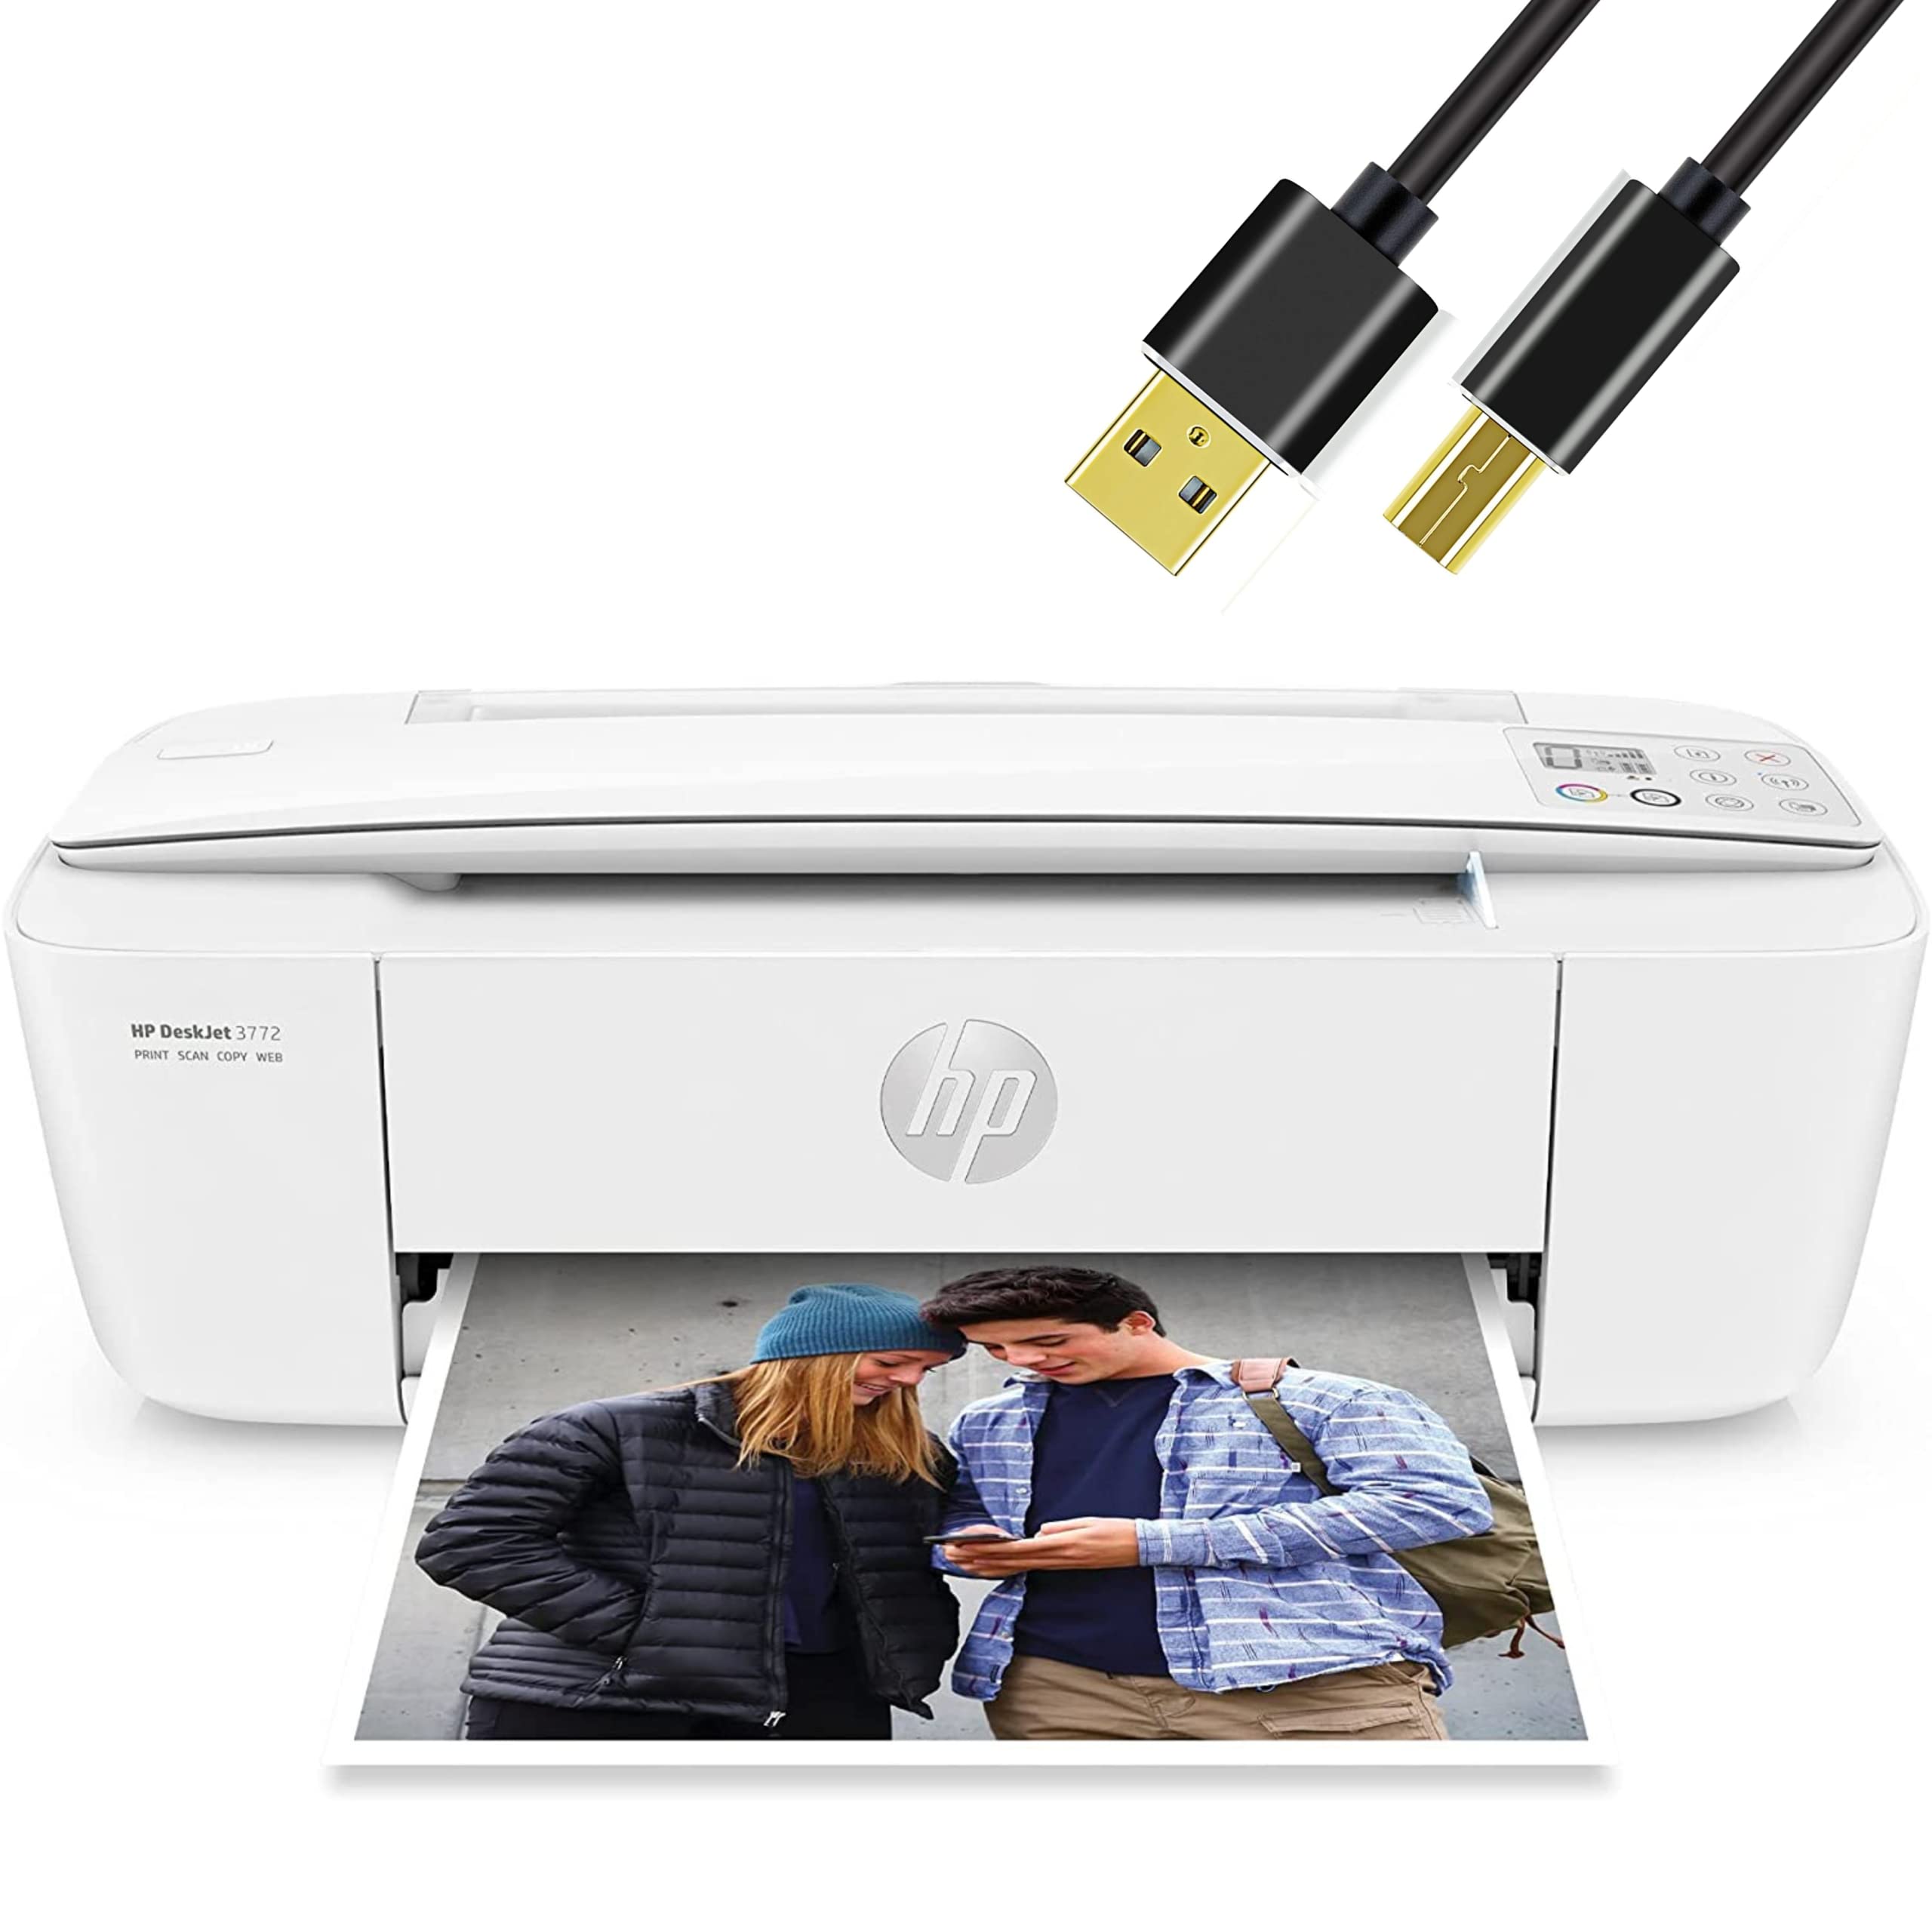 HP H-P DeskJet Wireless Color Inkjet Printer All-in-One com Display LCD - Imprimir Digitalizar Cópia e Impressão Móvel Ultra Compacta com Cabo de Impressora de 6 pés